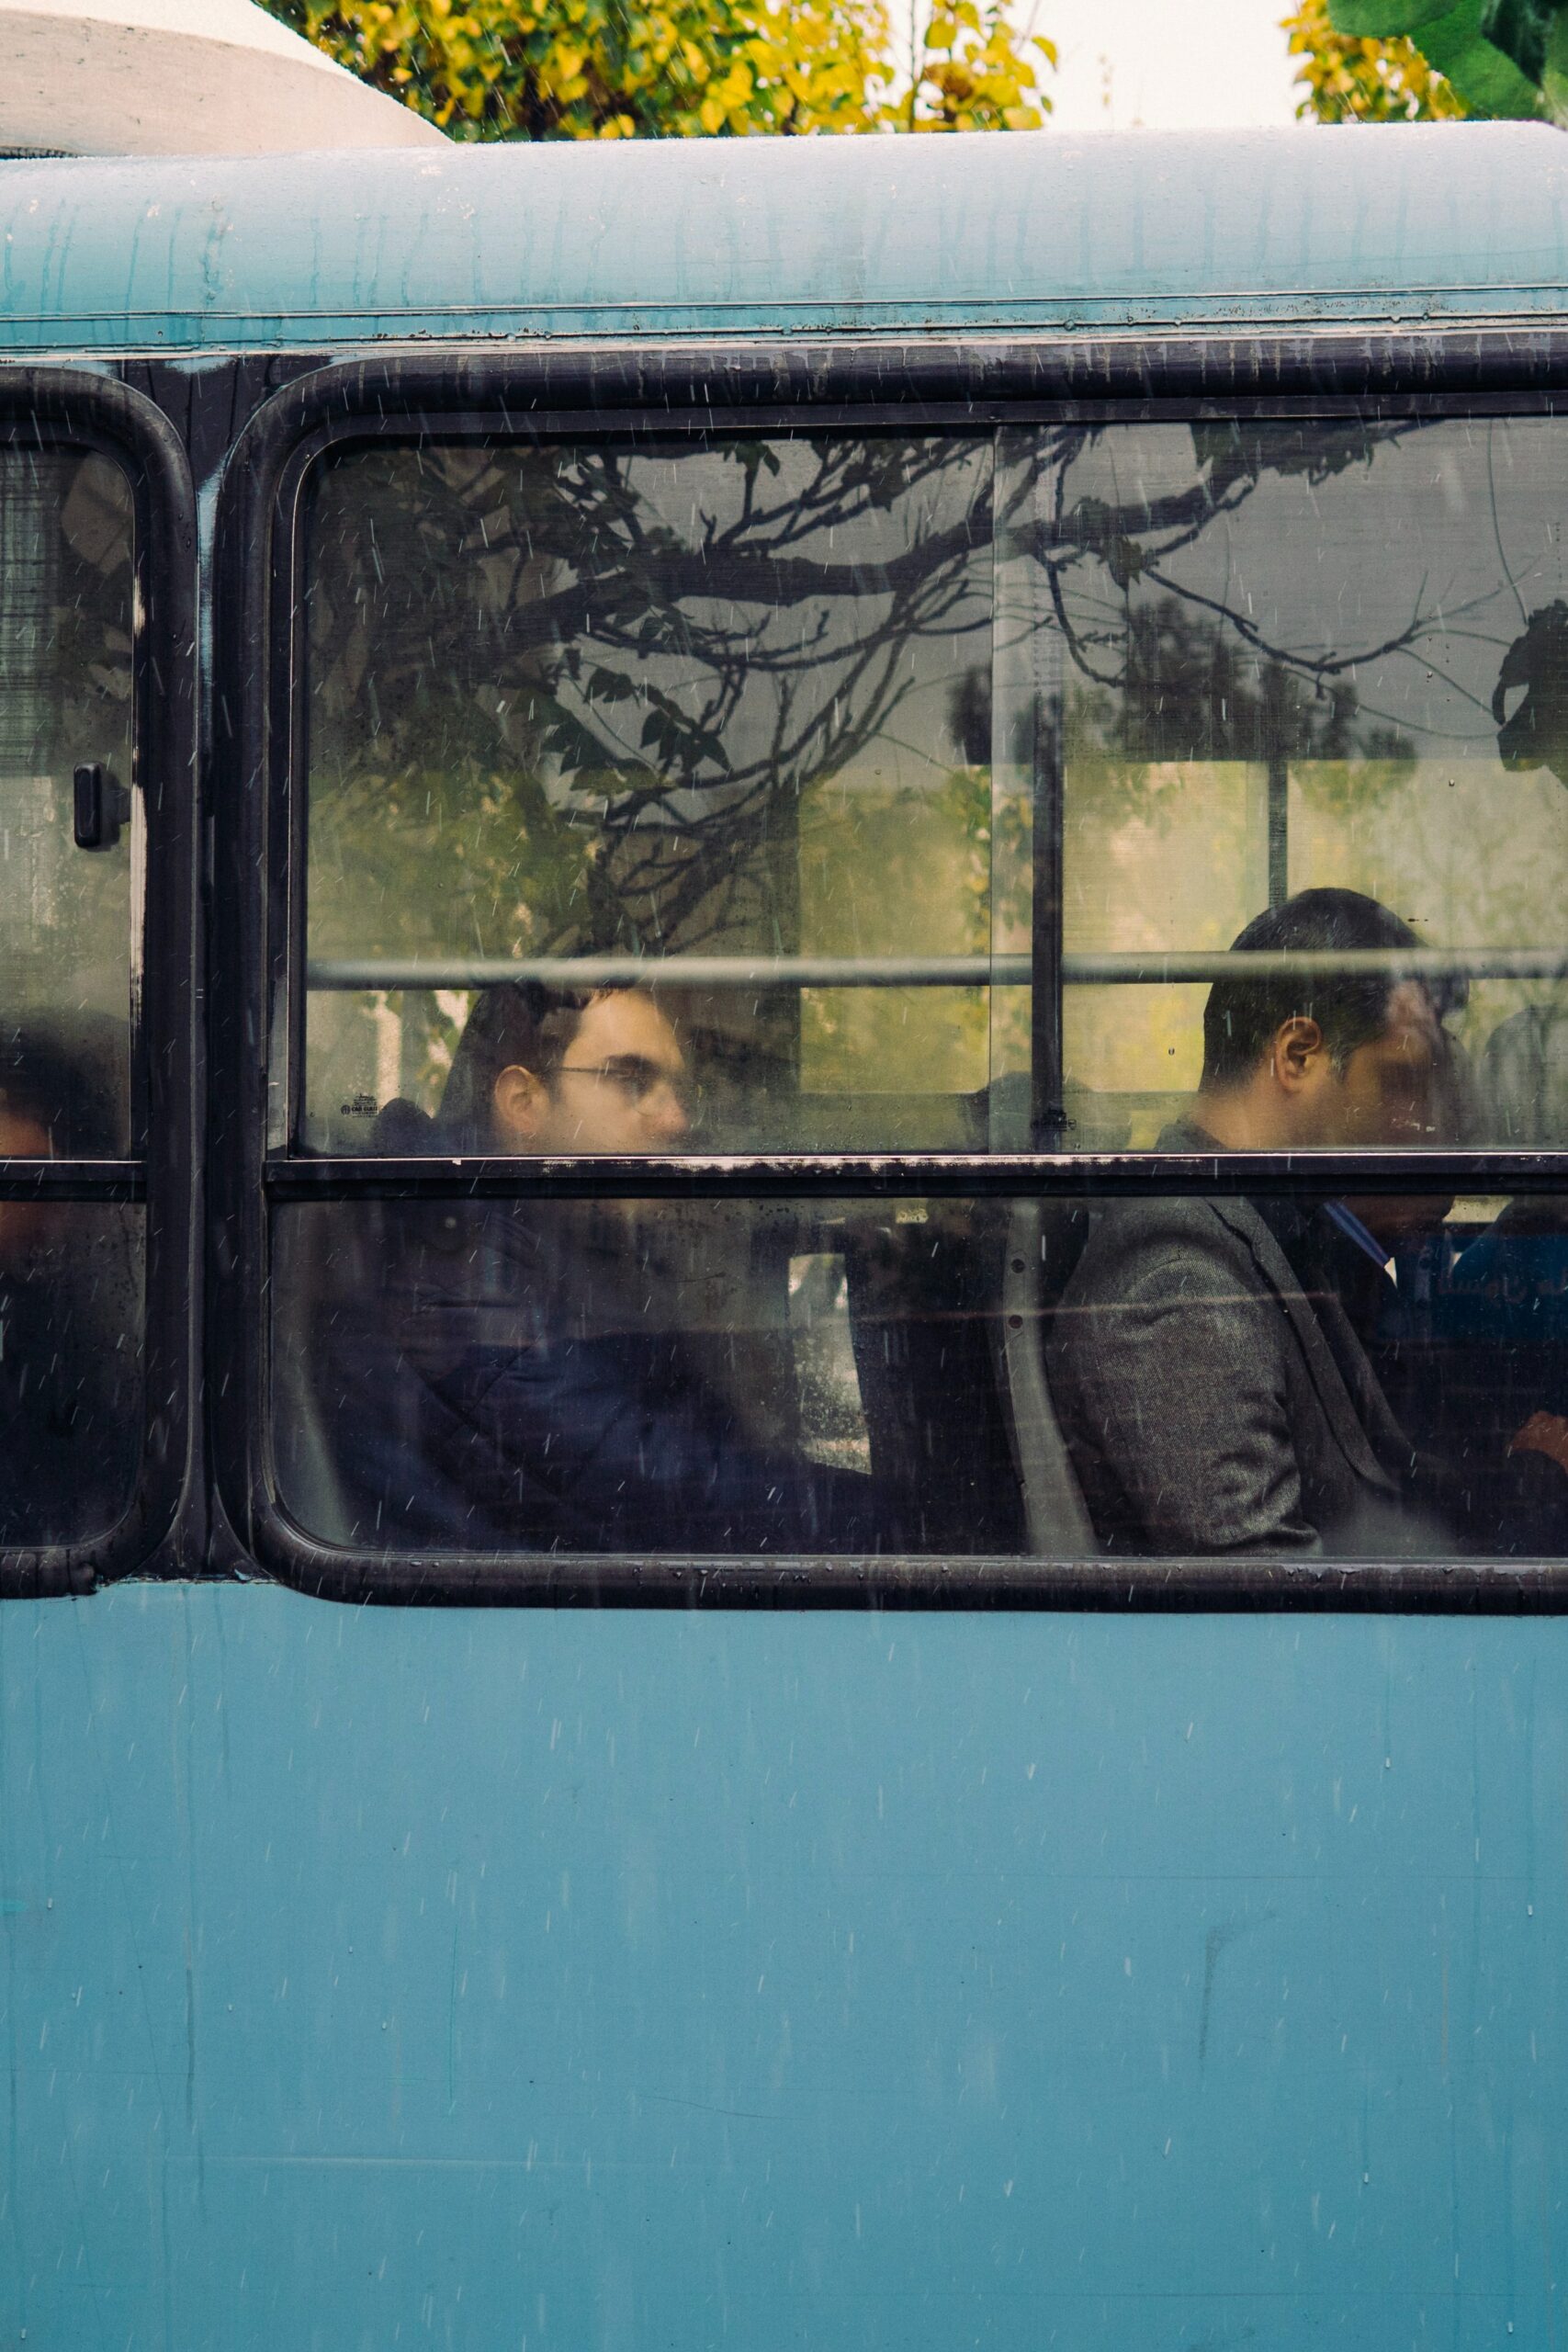 Photo by Mehrshad Rajabi on Unsplash